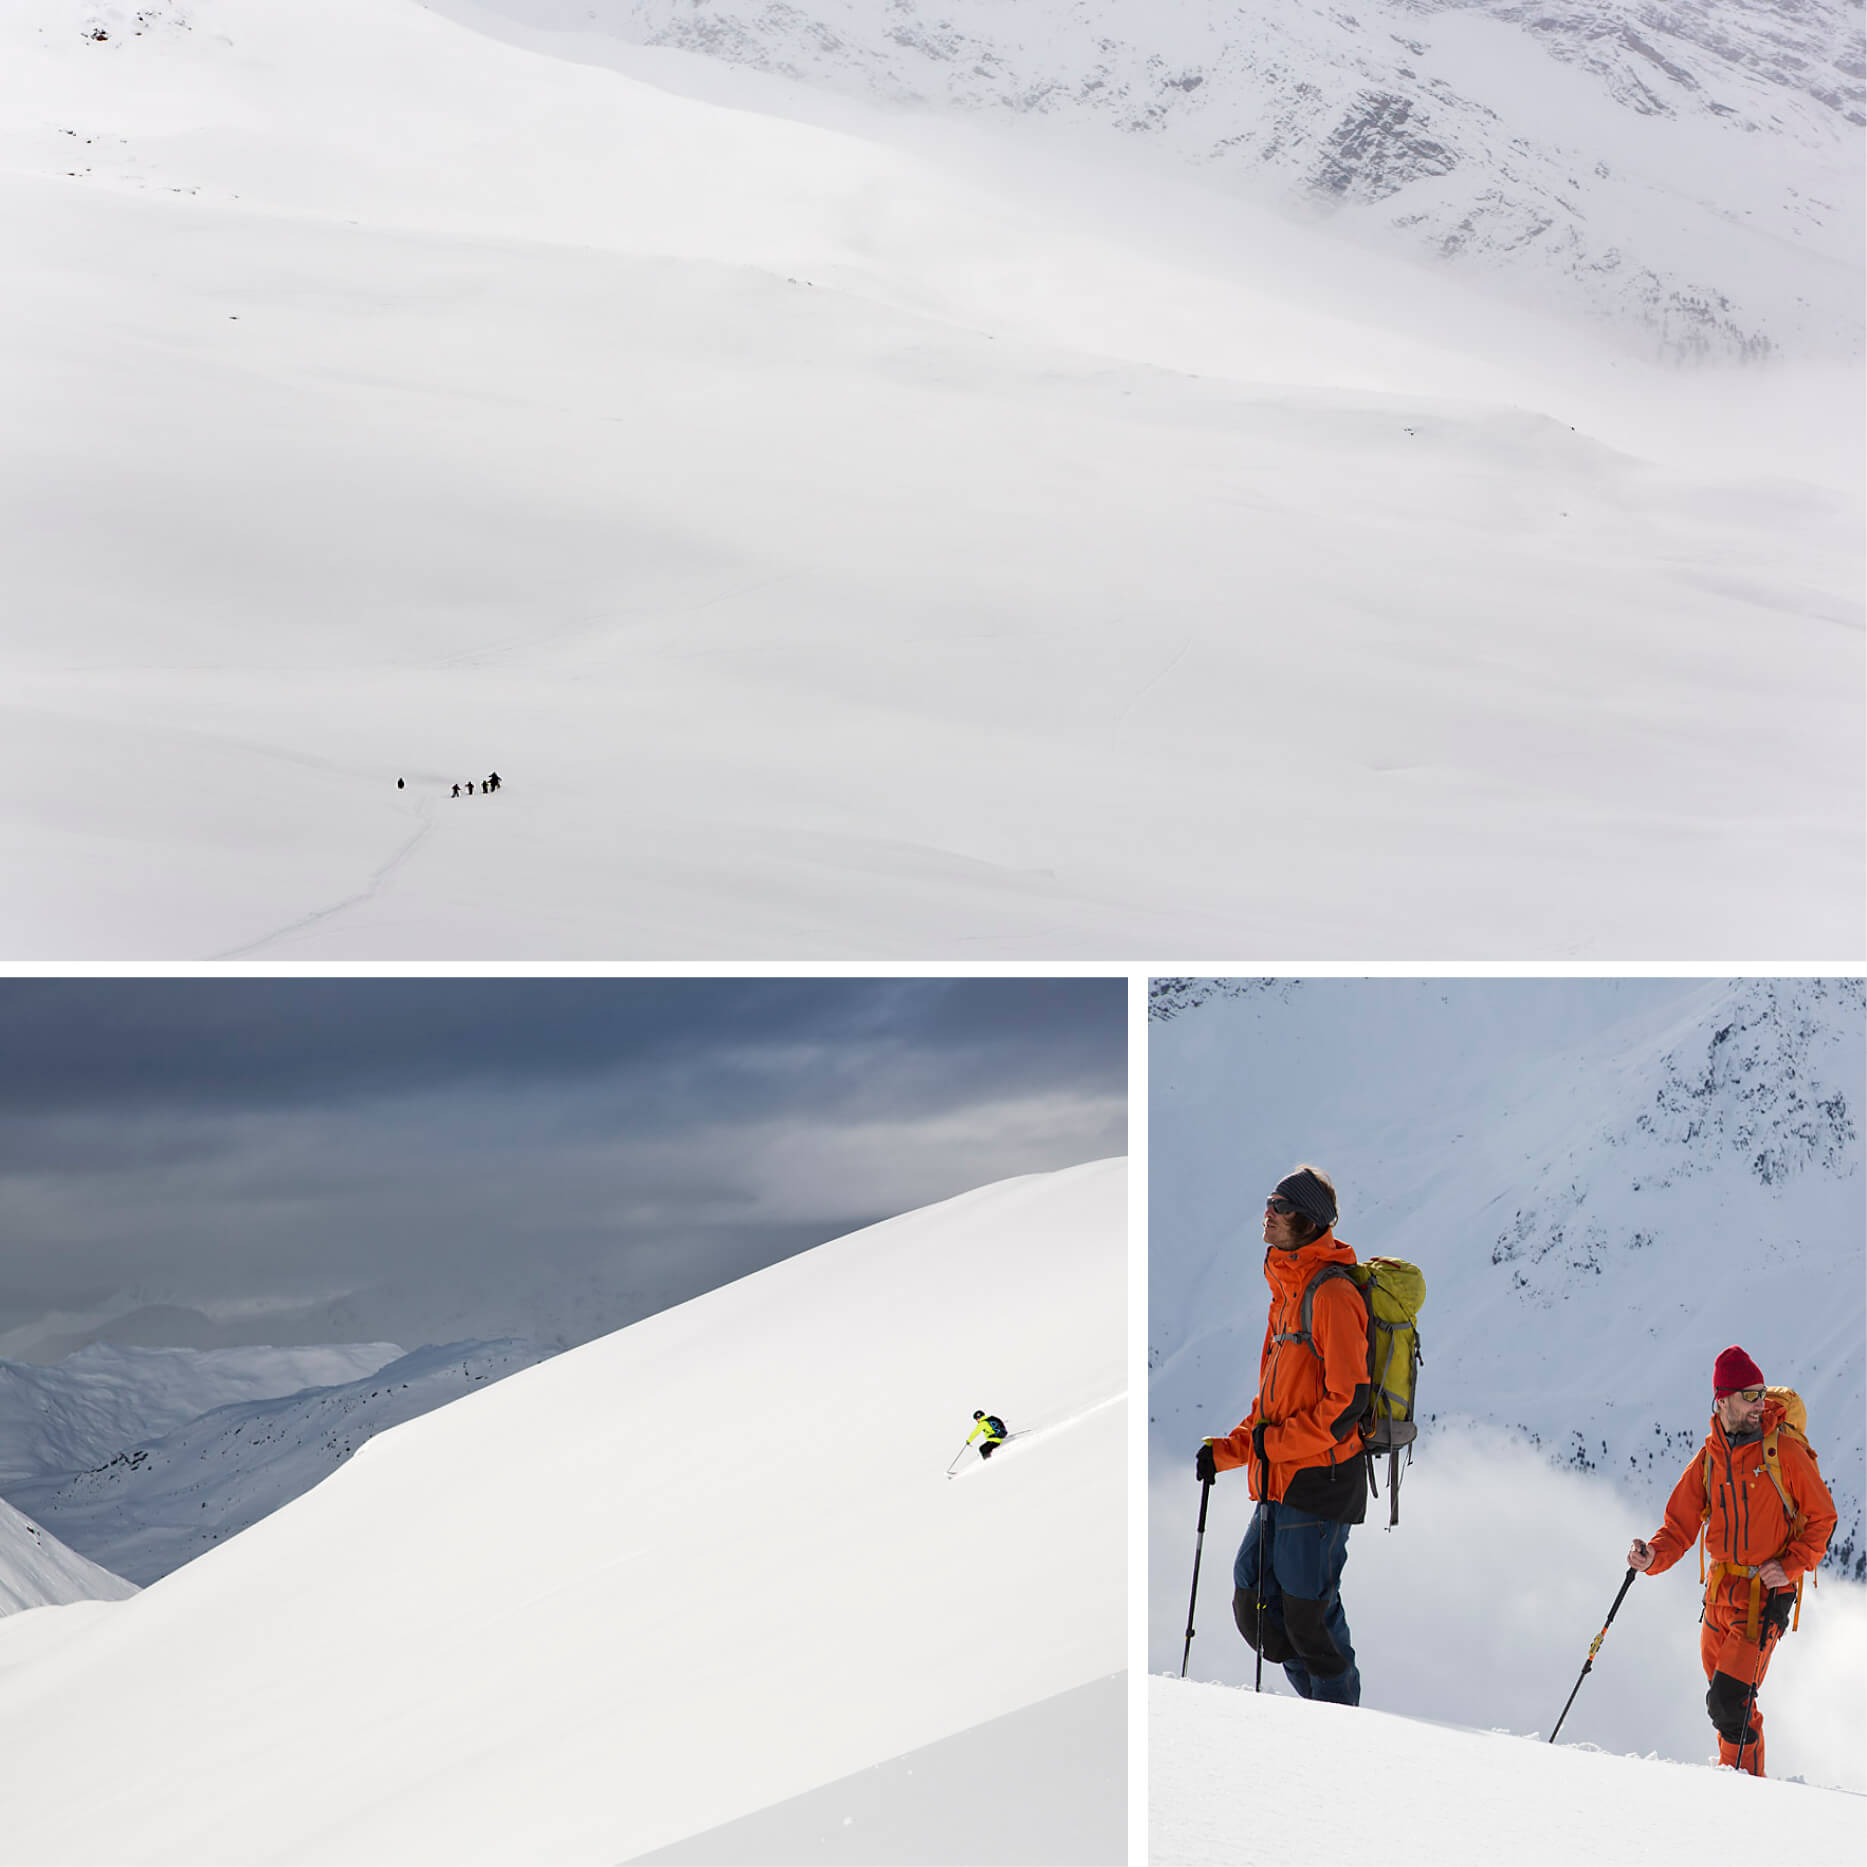 Skiing, mountains, mountain guides